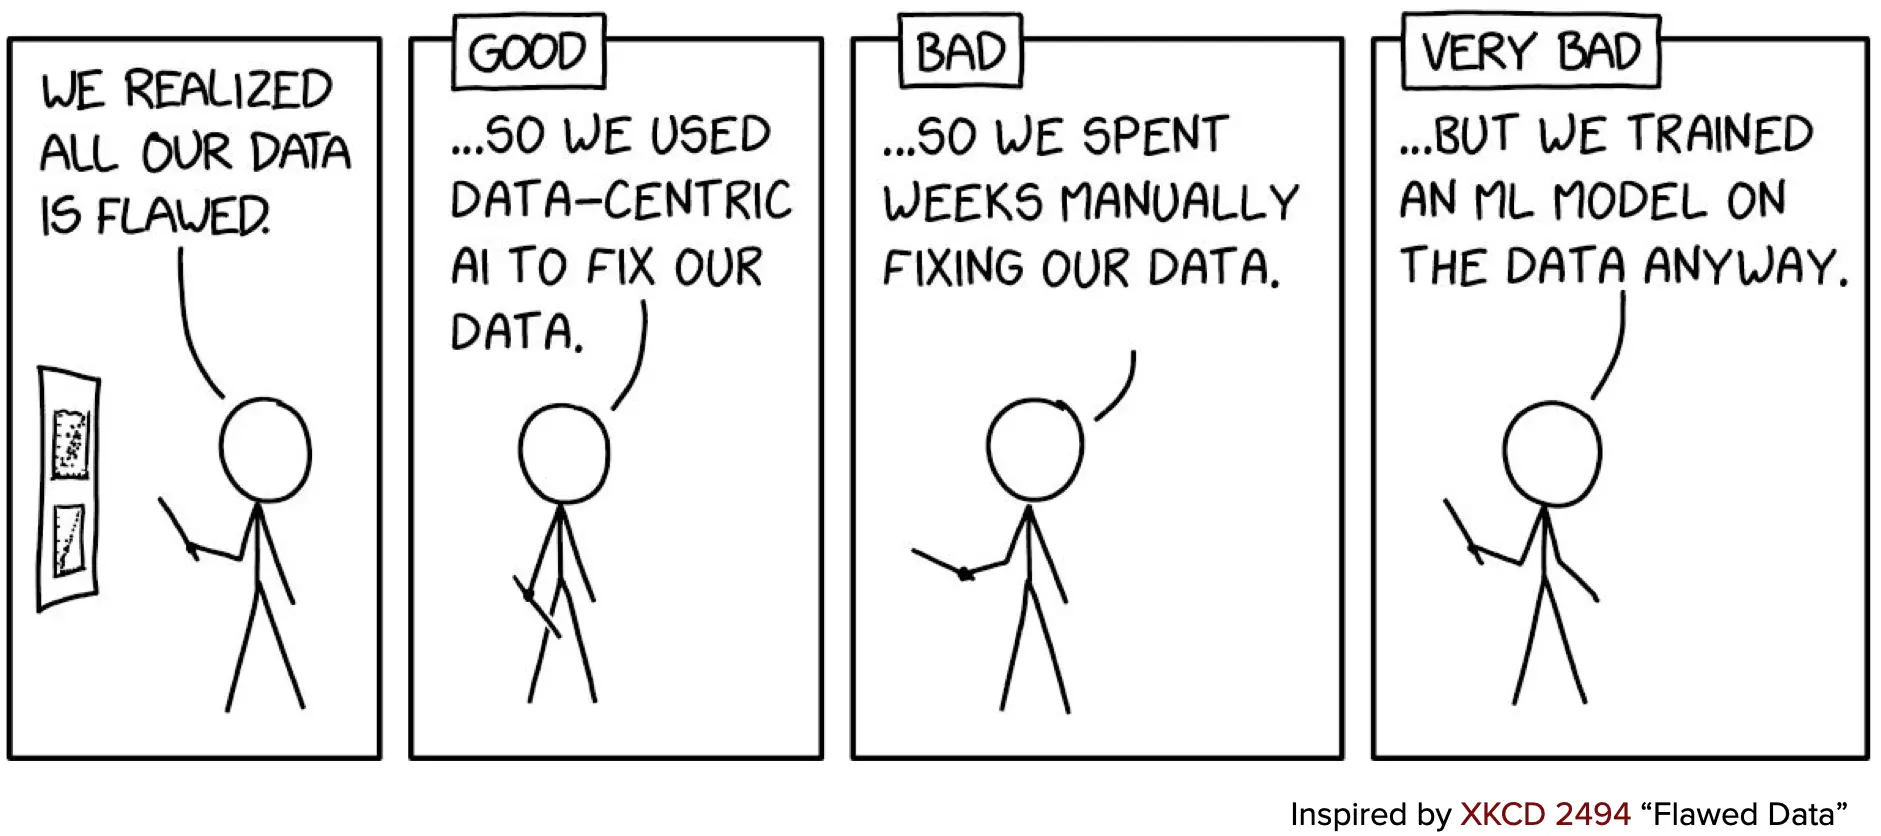 Bad data.